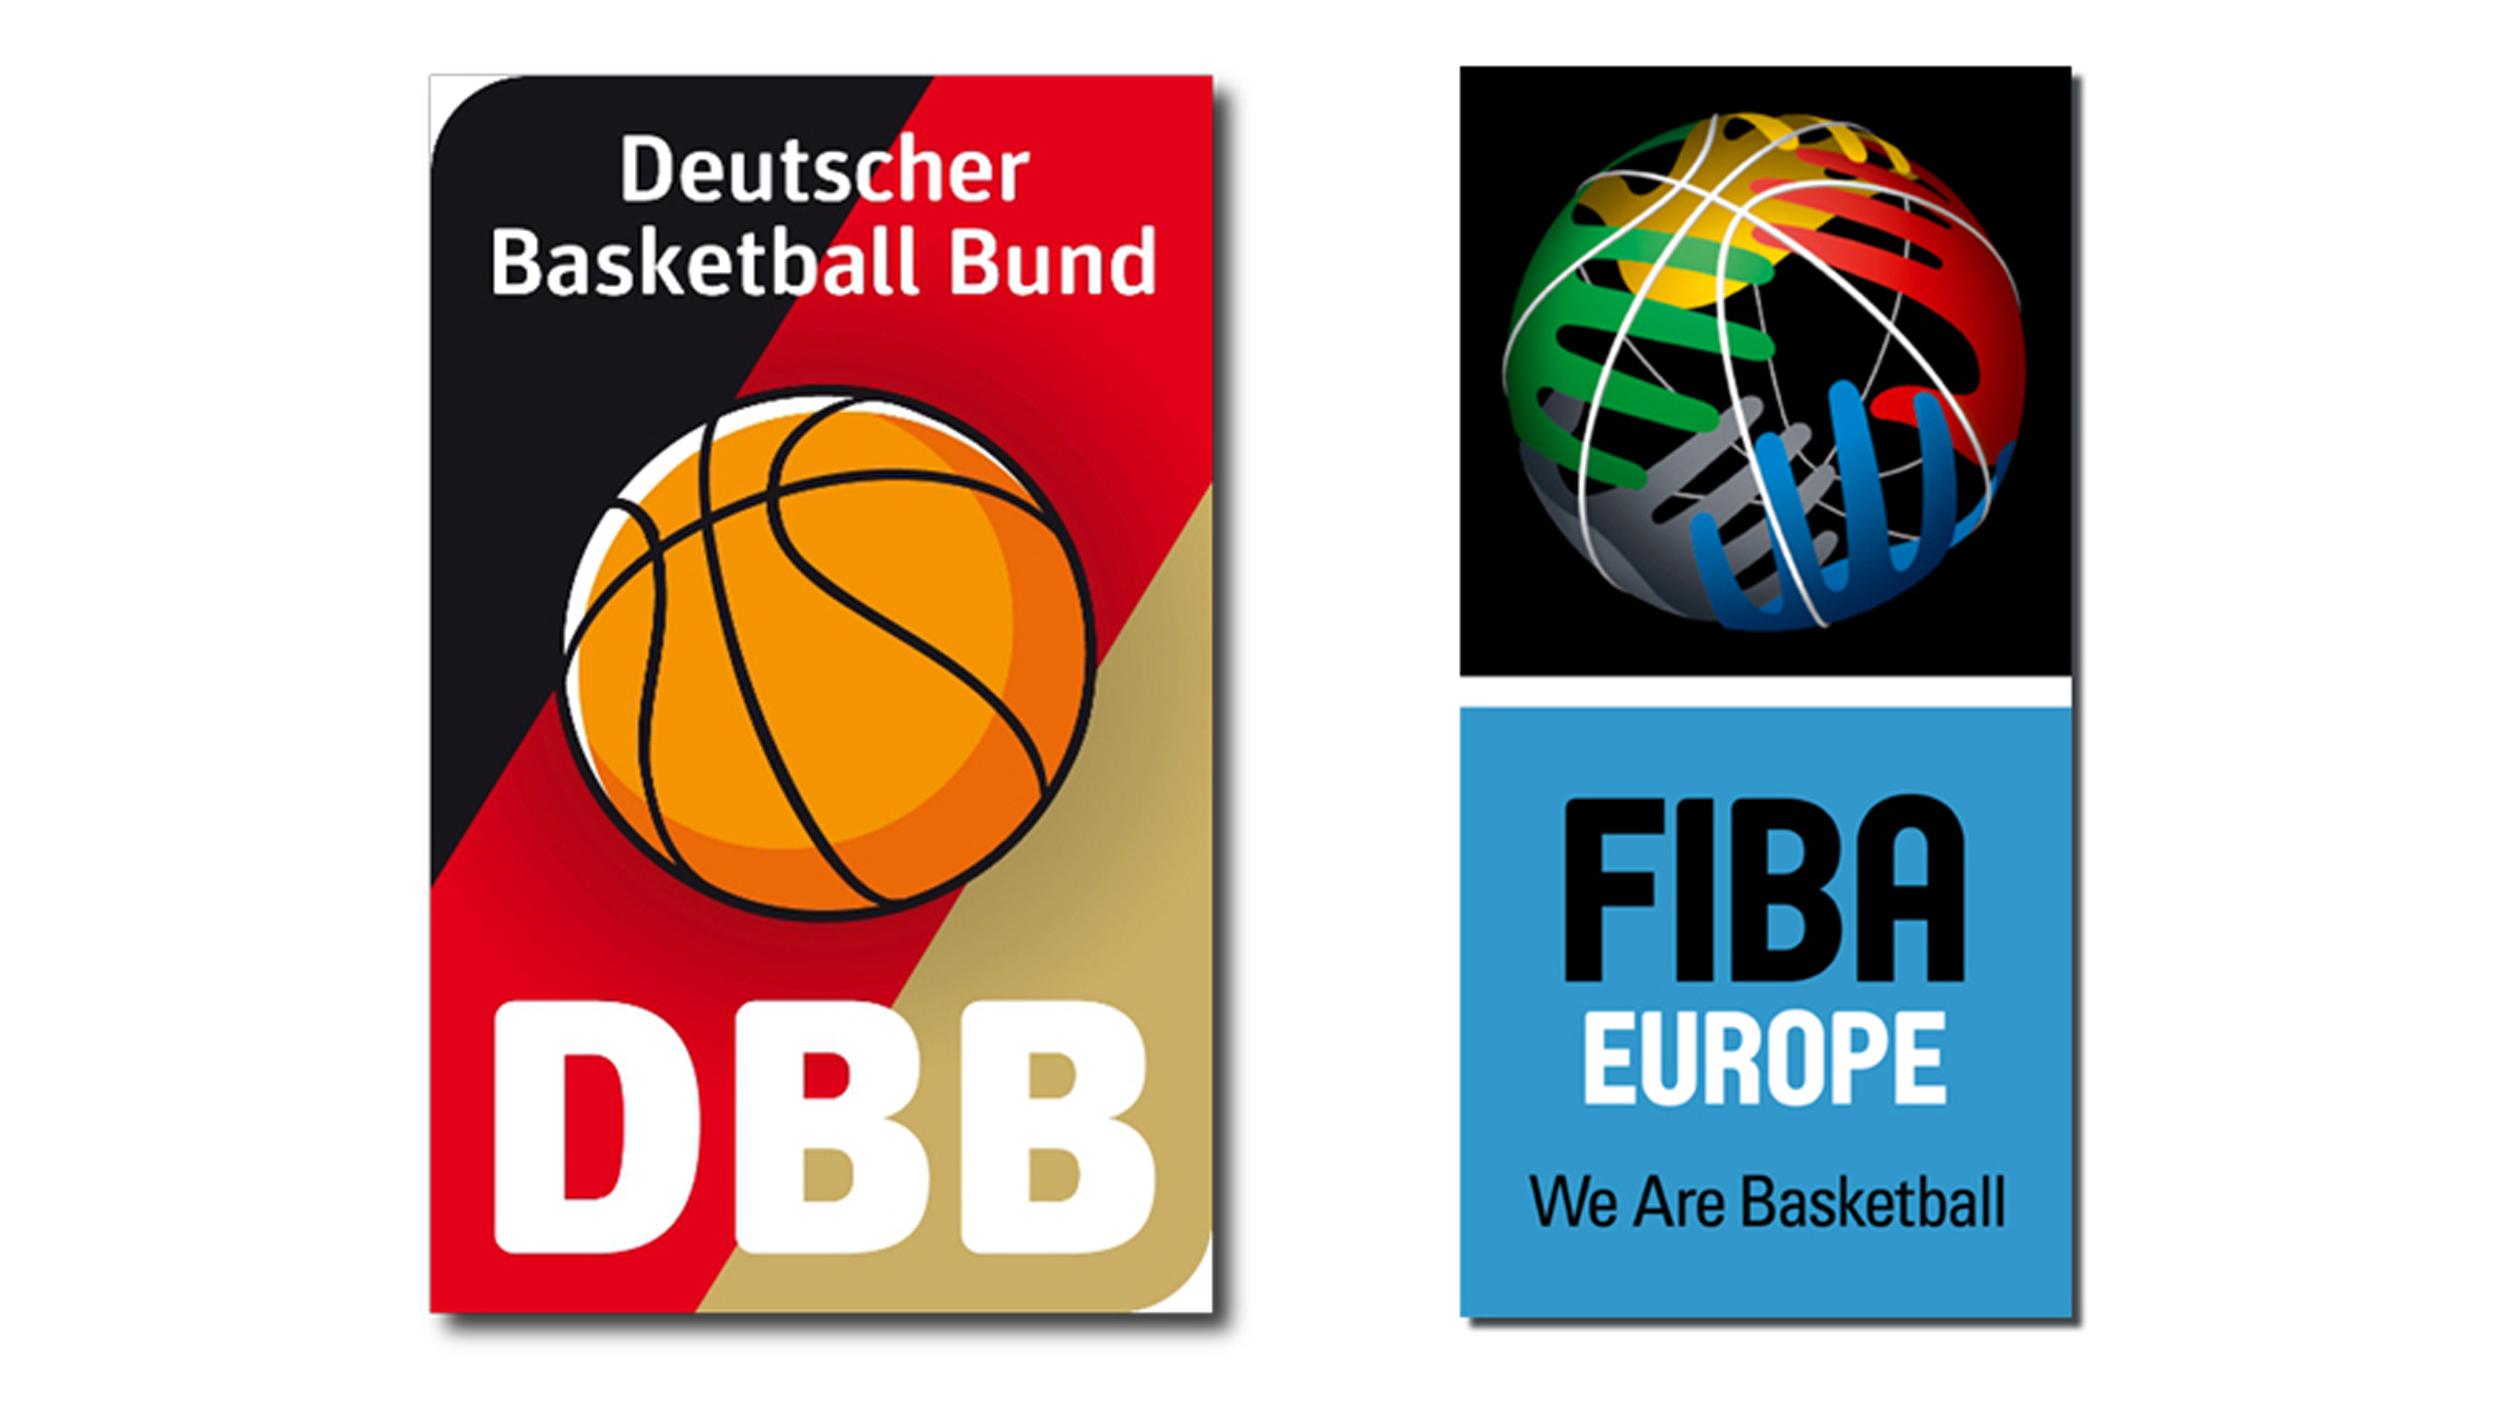 Der Deutsche Basketball Bund hat sich wie angekündigt fristgerecht um die Austragung einer Vorrunde der EuroBasket 2015 mit dem Standort Berlin beworben. Die Bewerbung in Form einer farbigen, 30-seitigen Broschüre und einer DVD mit den vom europäischen Basketball-Verband FIBA Europe geforderten Informationen wurde gestern in München zugestellt. Bedingt durch die Krisensituation in Teilen des Landes hatte der ursprüngliche Ausrichter Ukraine die EuroBasket 2015 in beiderseitigem Einvernehmen an die FIBA Europe zurückgegeben.